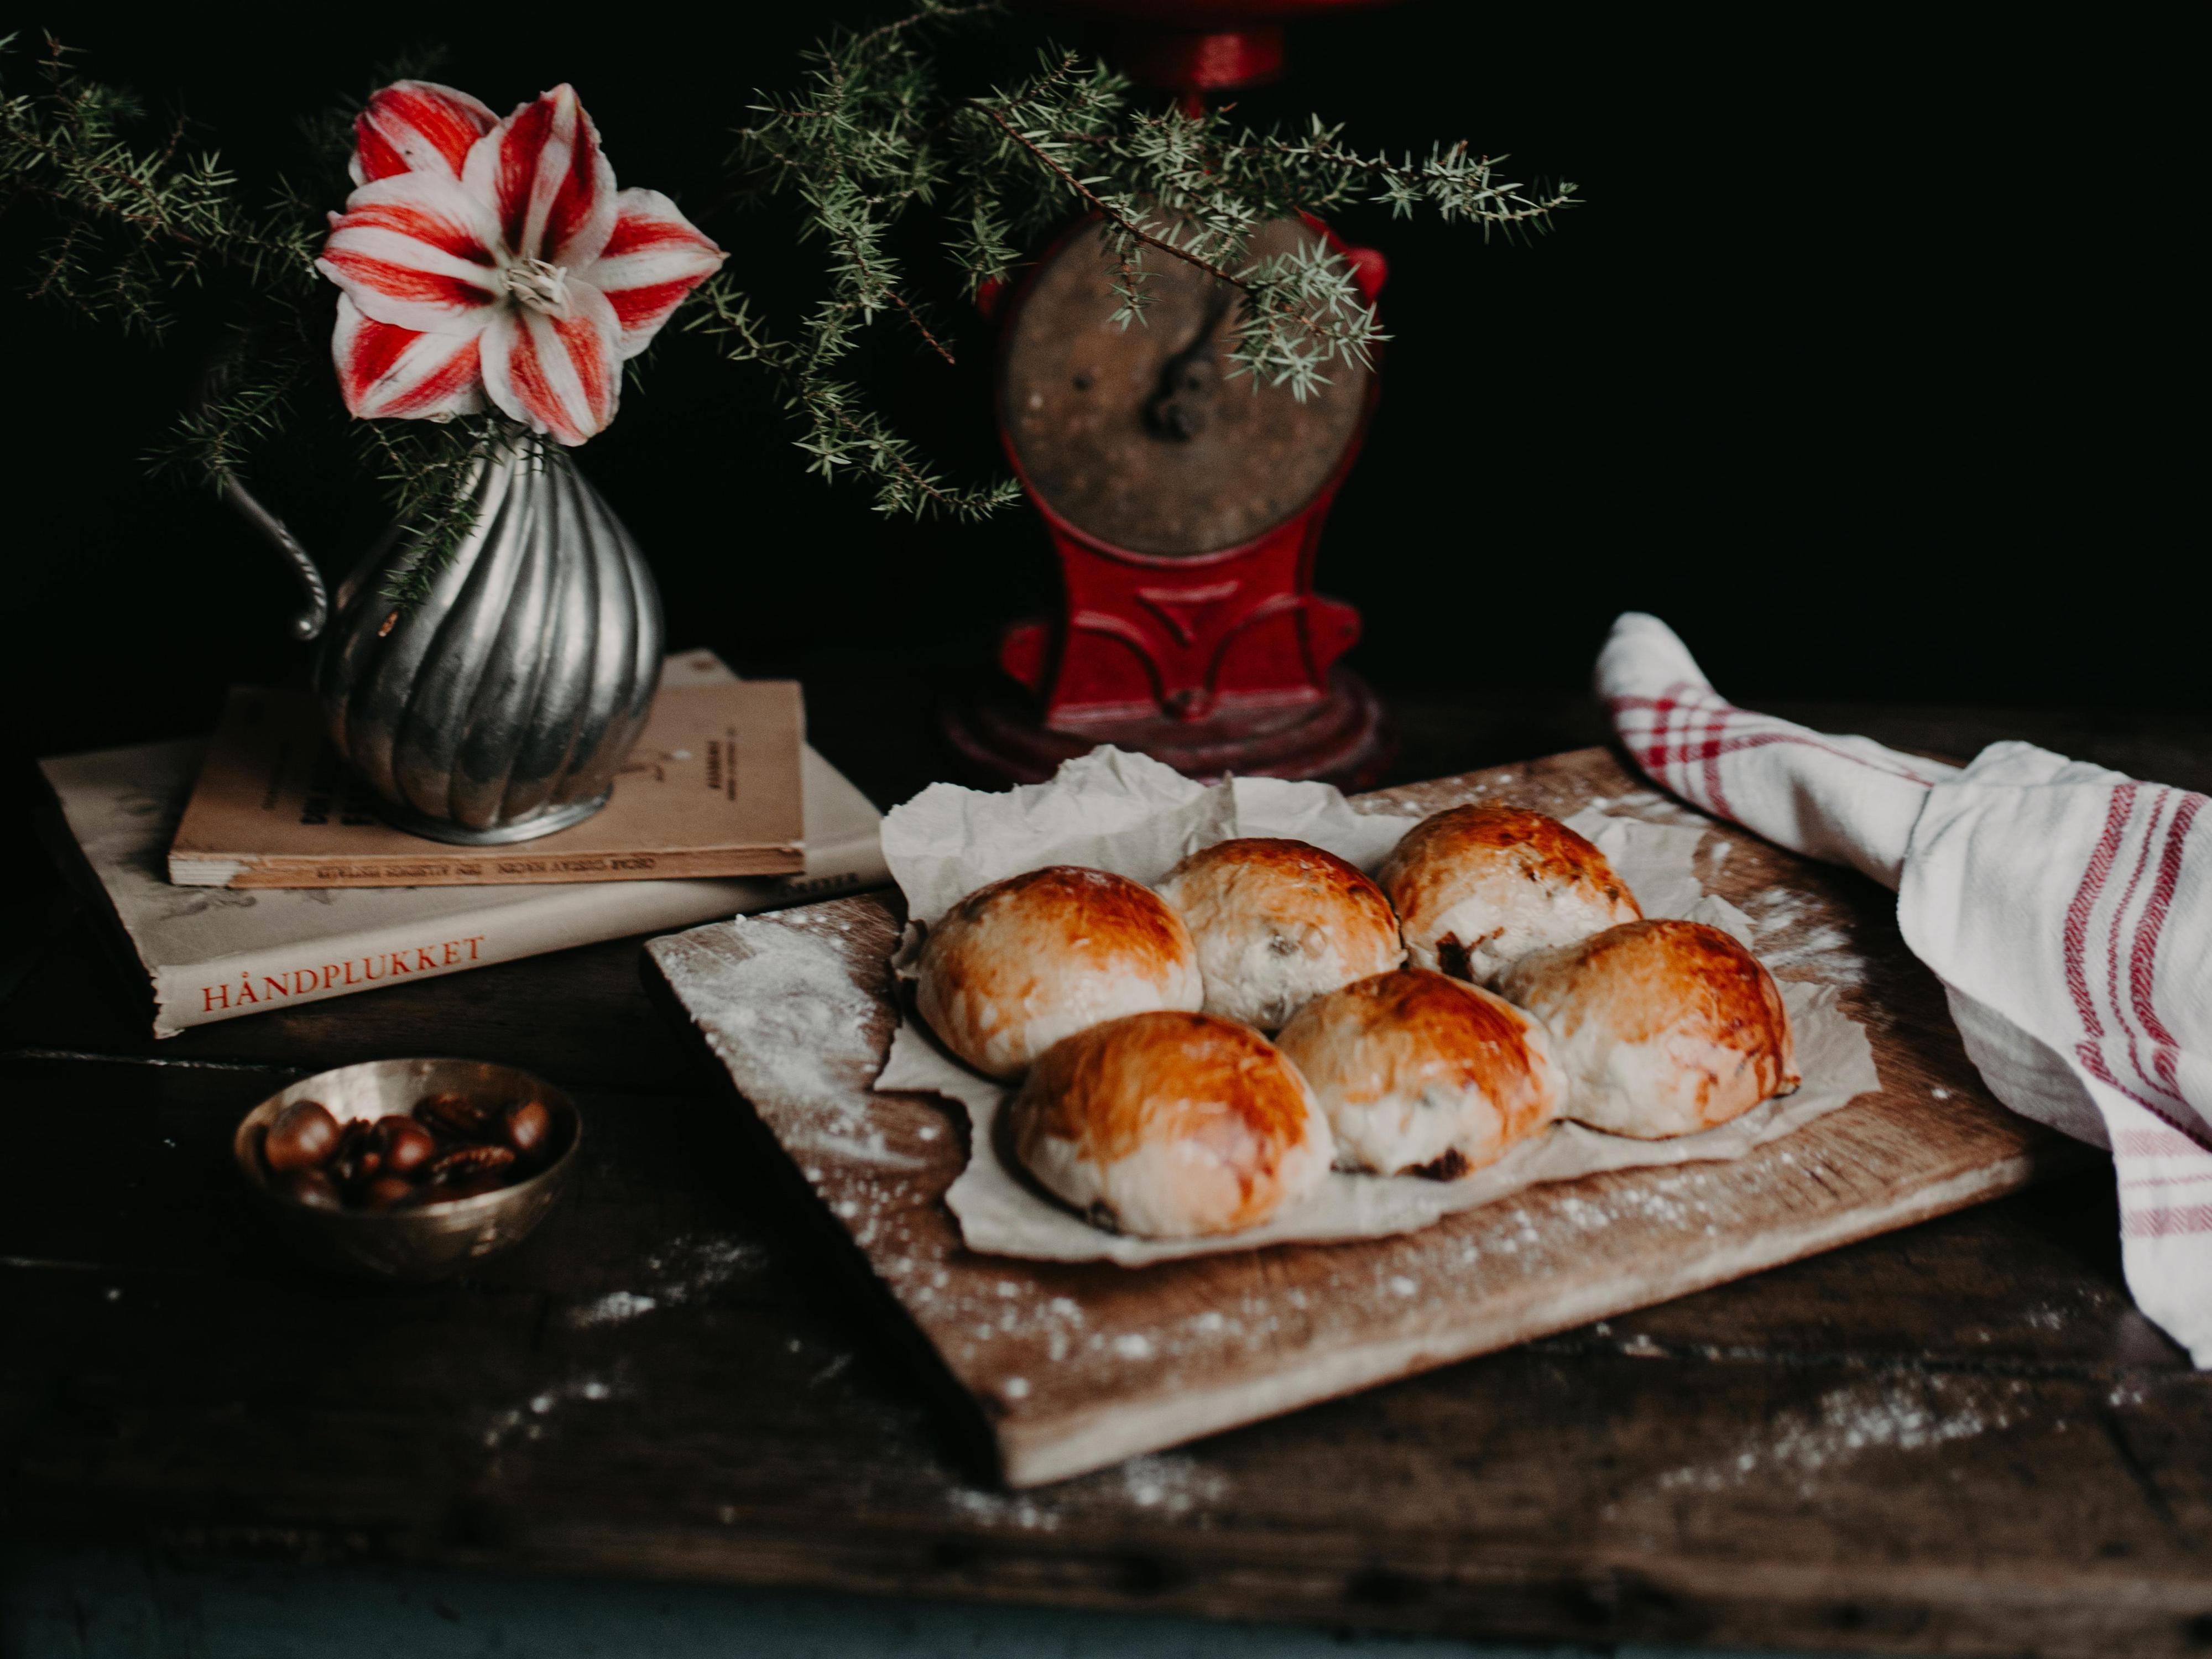 En skive julekake med smør og godt med geitost på toppen: Det er godt, det!, mener Frida Anker Kulmus.